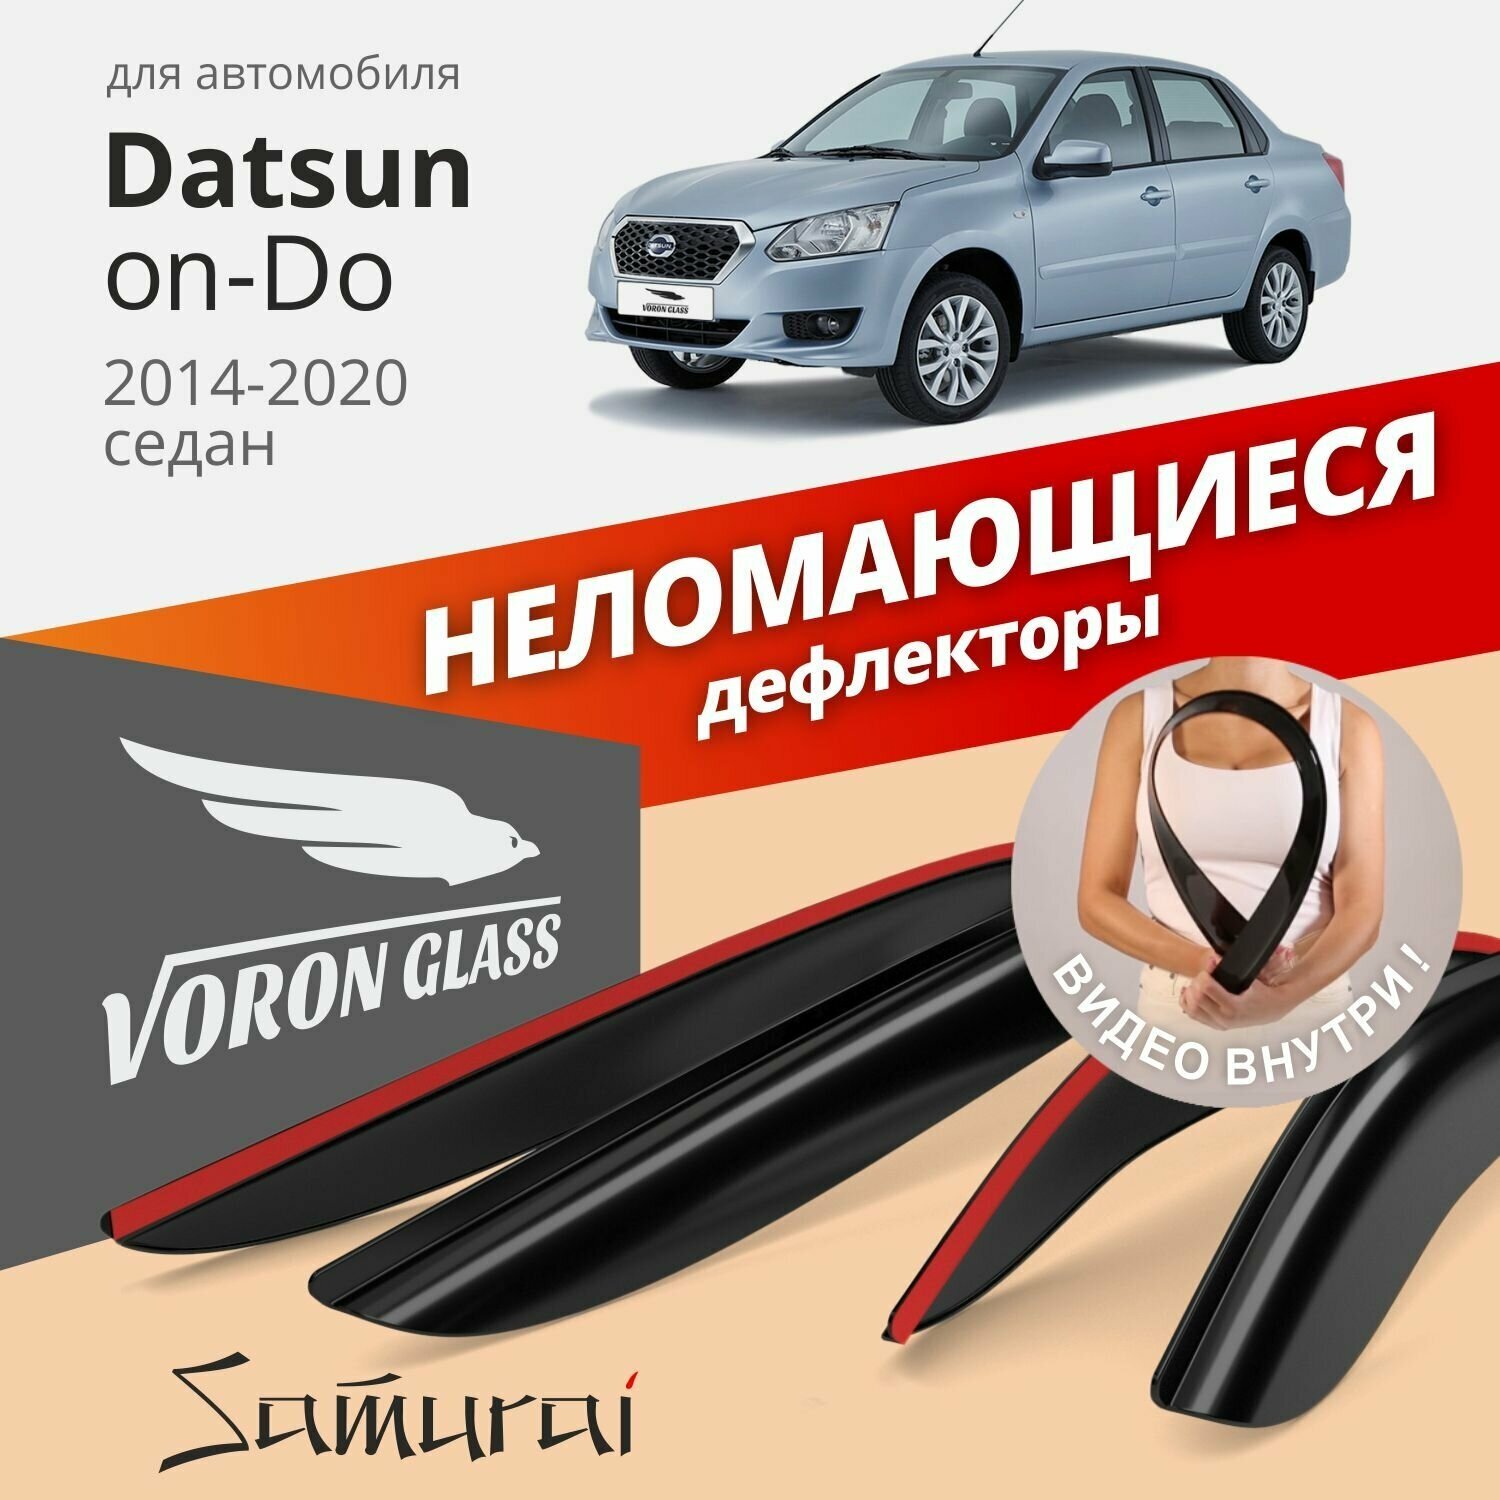 Дефлекторы окон неломающиеся Voron Glass серия Samurai для Datsun on-Do 2014-2020 седан, накладные 4 шт.